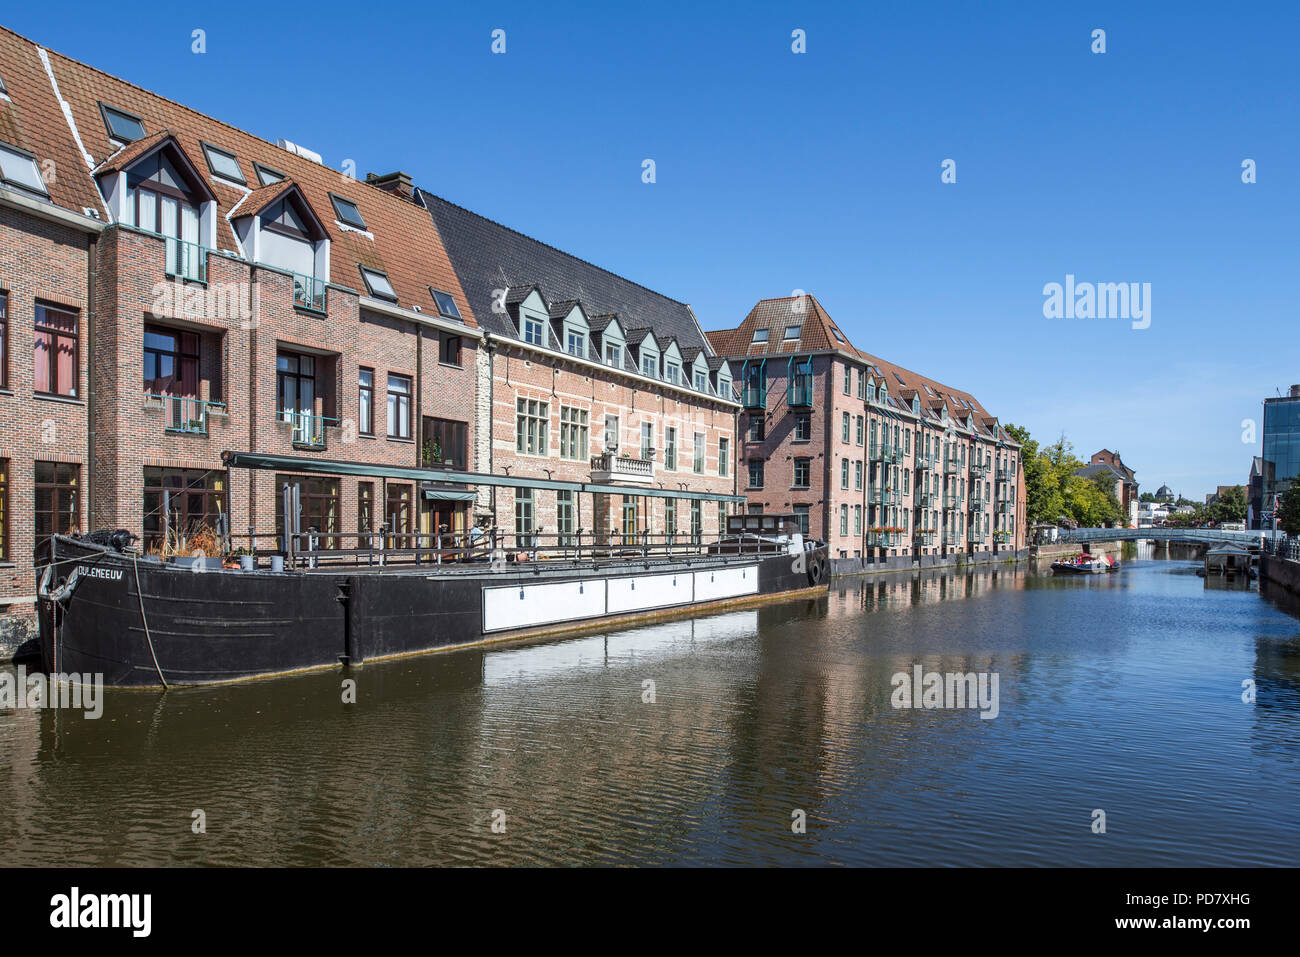 Taverne / Restaurant De Kraanbrug und Binnenschiffen Dijlemeeuw auf dem Fluss Dijle in der Stadt Mechelen/Malines, Antwerpen, Flandern, Belgien Stockfoto